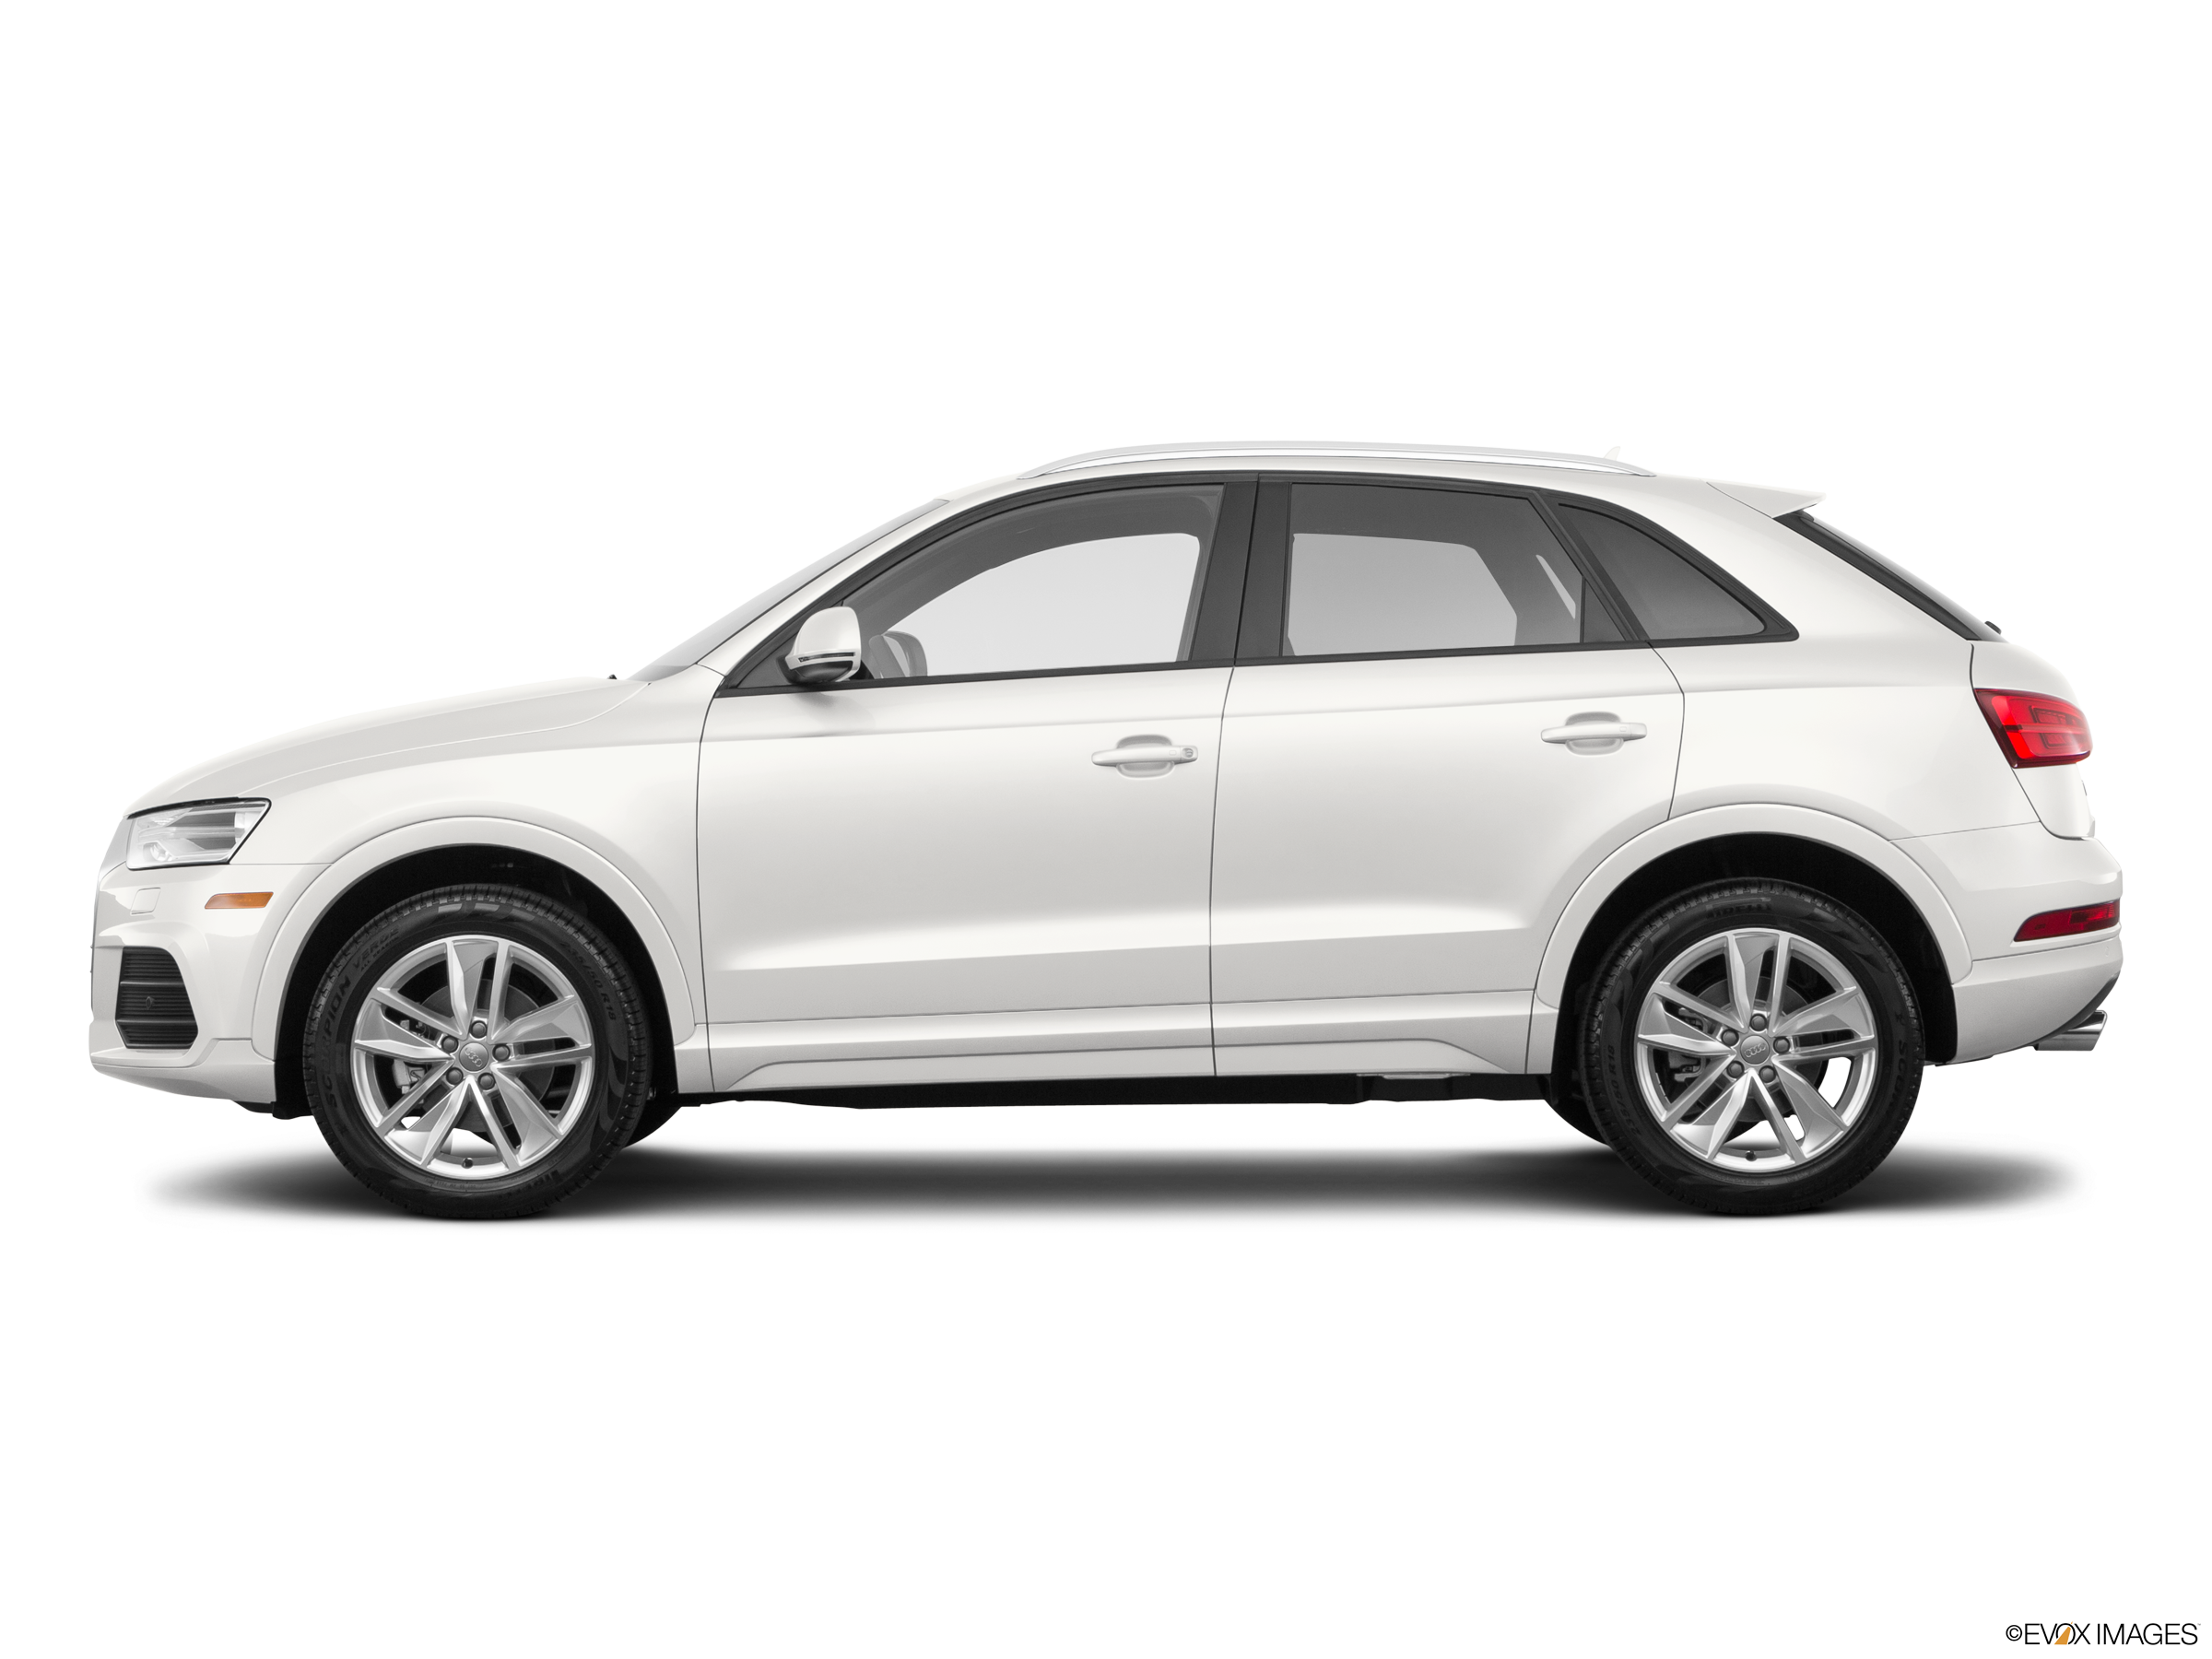 2017 Audi Q3 Price, Value, Ratings & Reviews